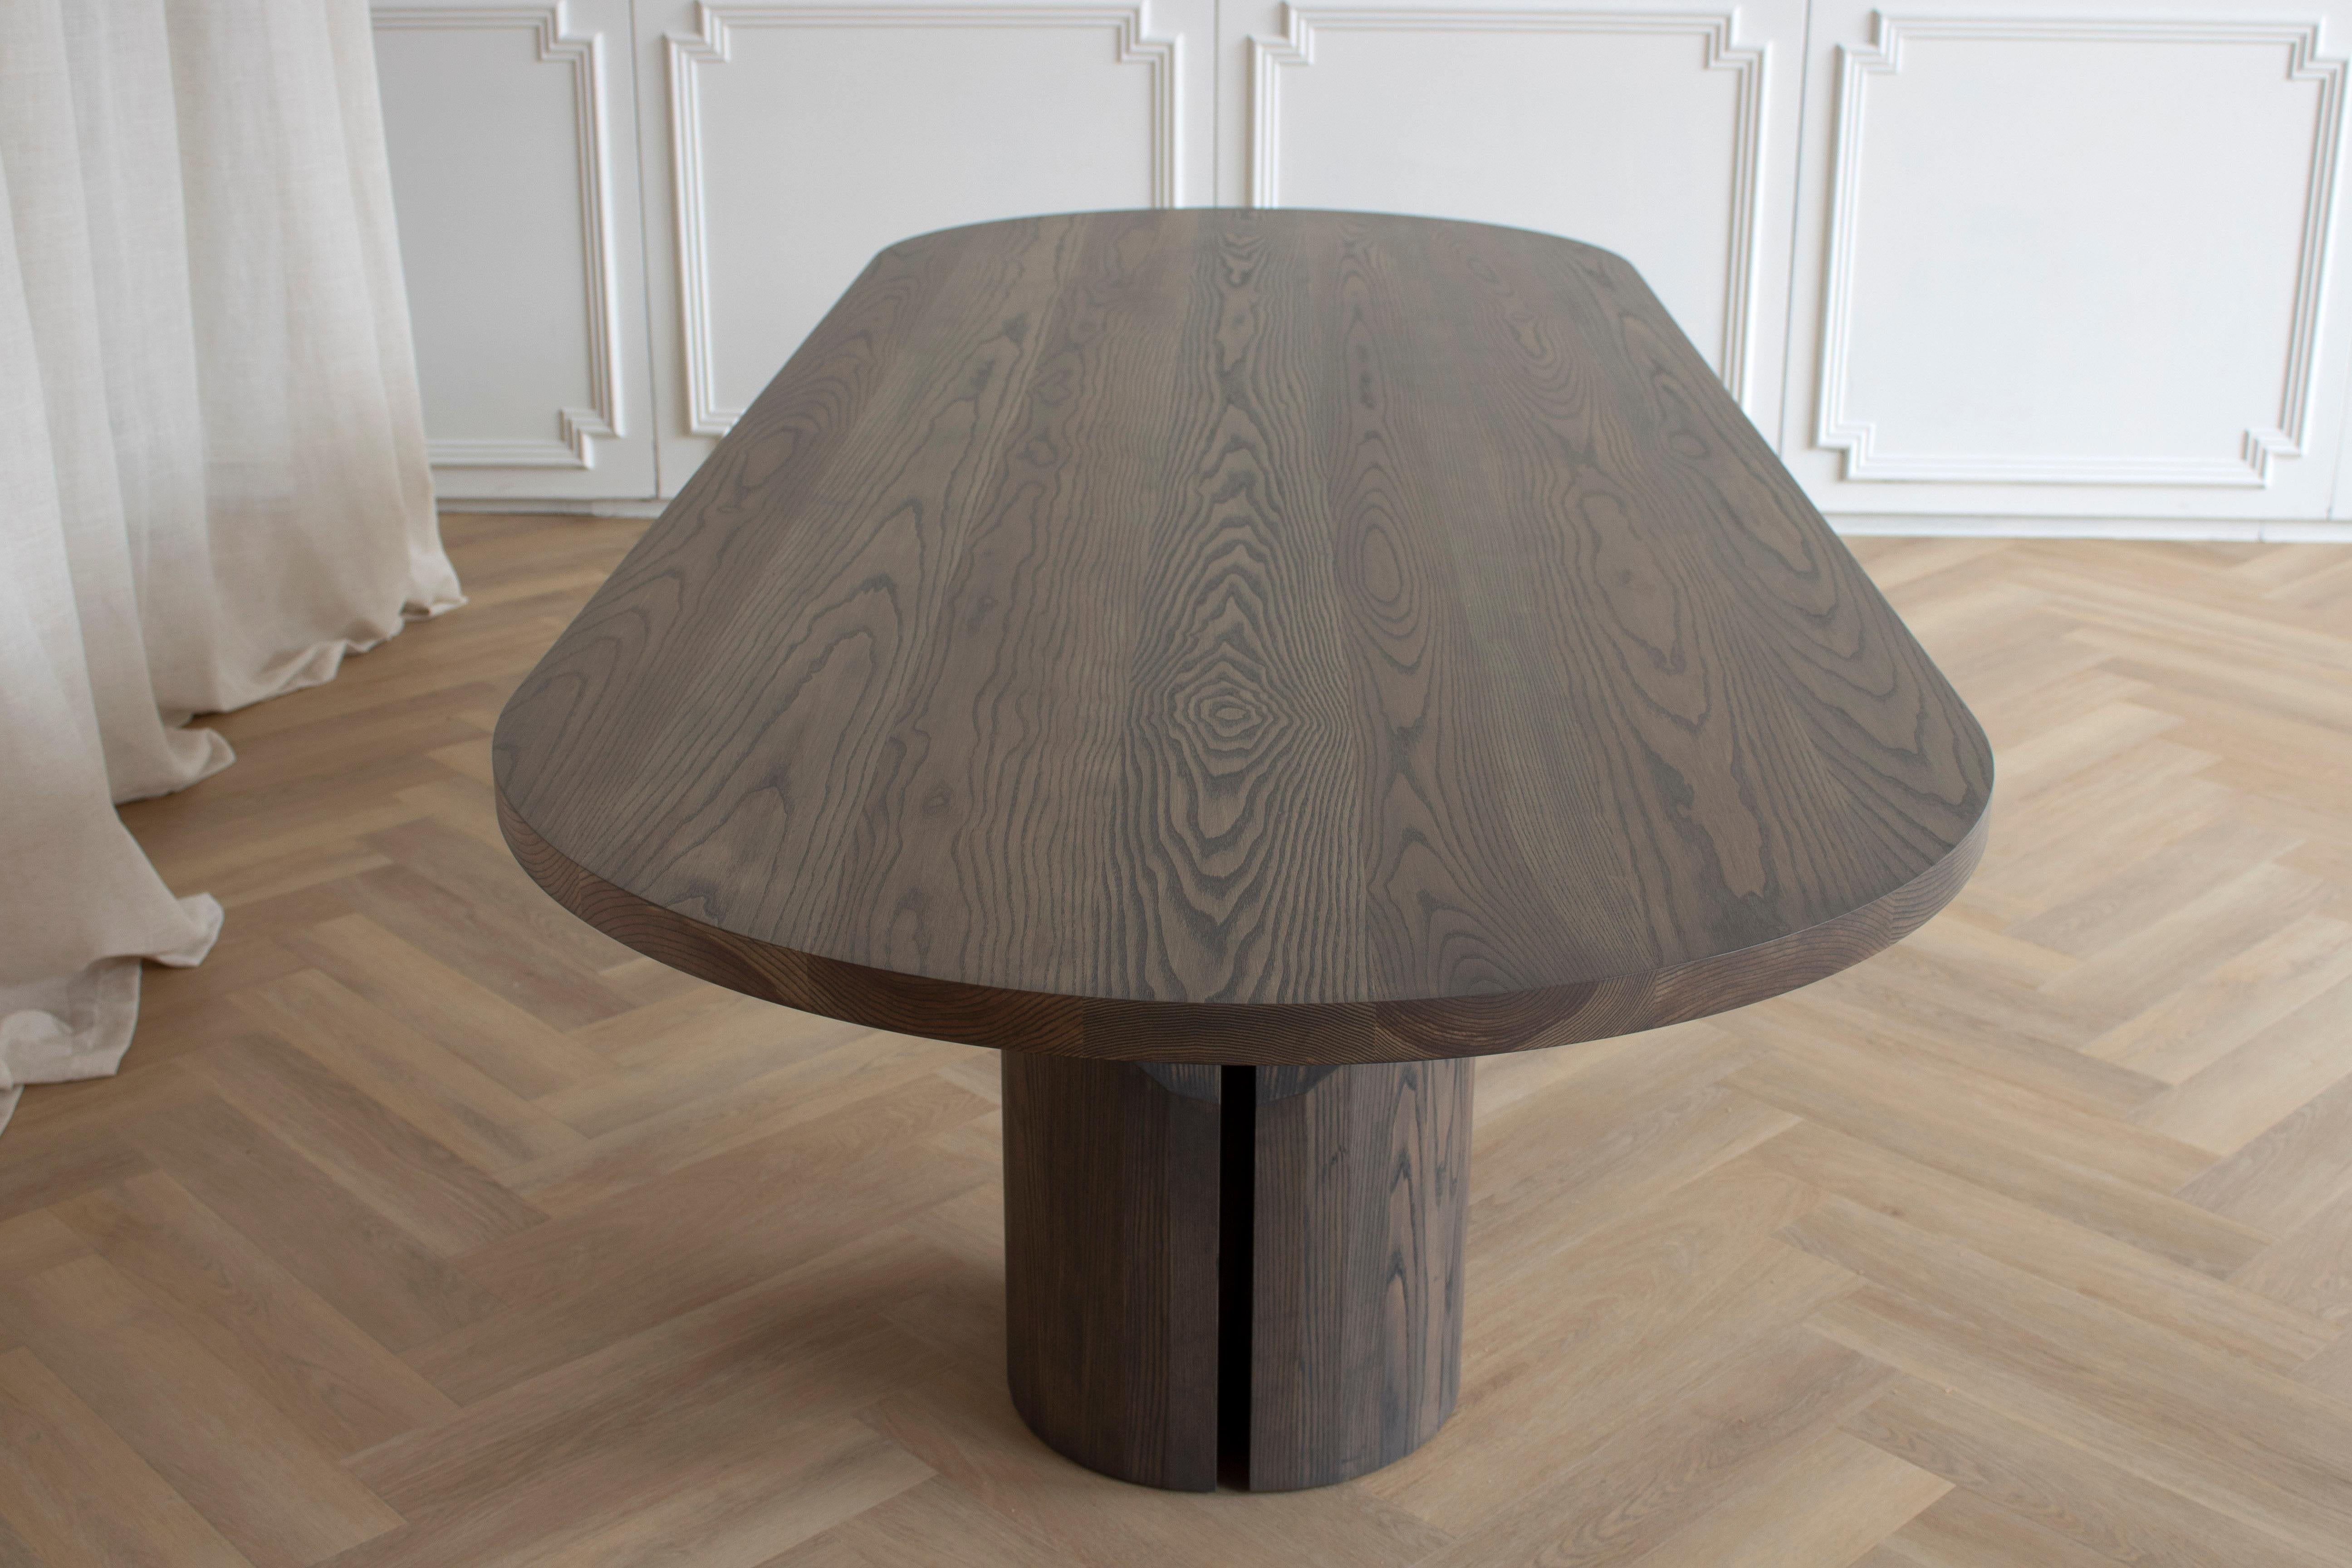 Construite en bois massif et conçue pour durer des générations, notre table de salle à manger Barrow repousse les limites de ce qui est possible avec la construction en bois massif. Le design de cette taille de 120 